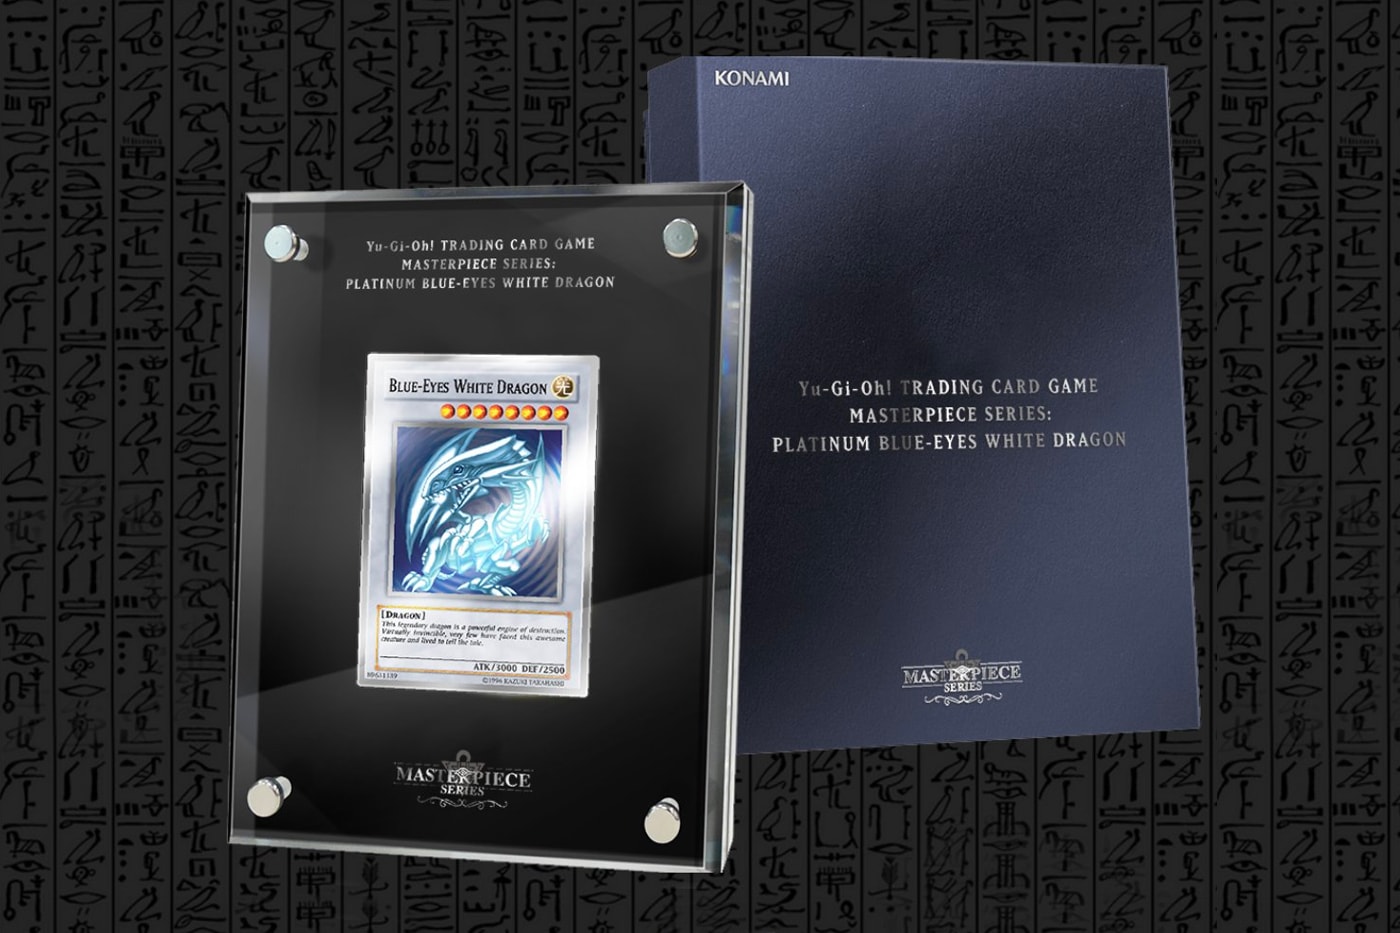 わずか数秒で完売した純銀製の“青眼の白龍”が転売続出の被害に Yu-Gi-Oh! TCG Masterpiece Series Platinum Blue-Eyes White Dragon Release seto Kaiba corp trading cards gaming ebay silver Konami 